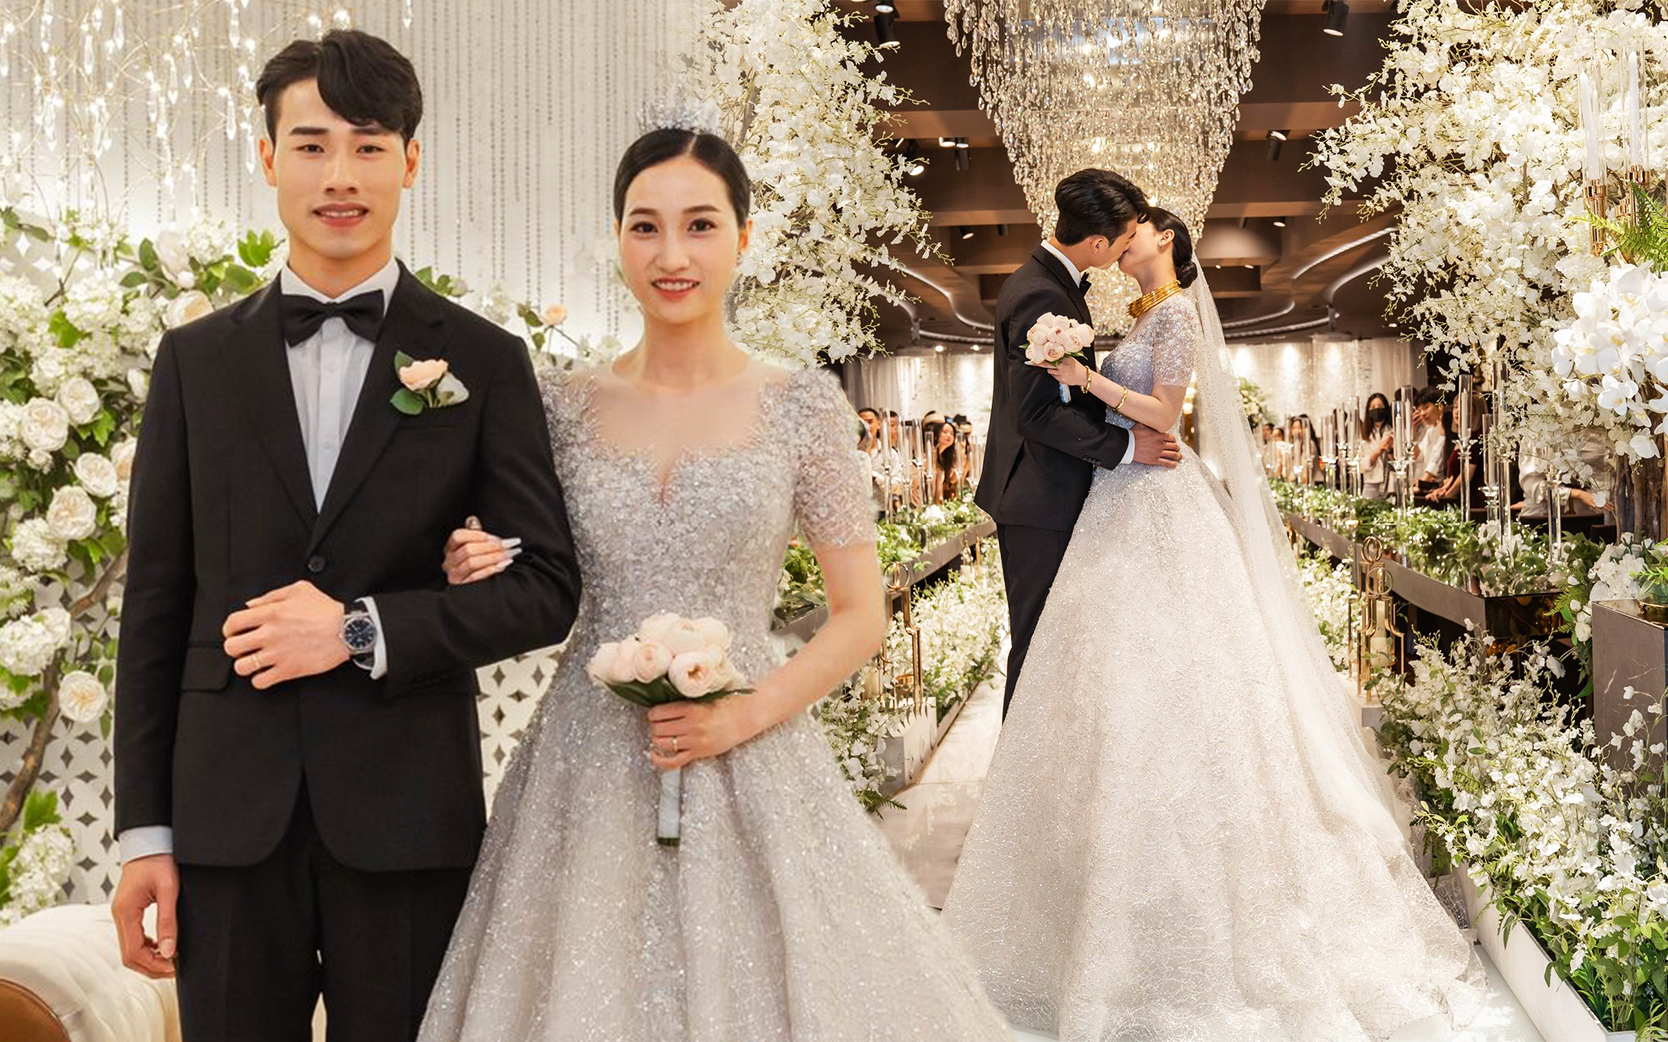 Cặp đôi Việt Nam bỏ 600 triệu tổ chức đám cưới đẹp như phim tại Hàn, nhìn lễ đường mà mê mẩn! - Ảnh 2.